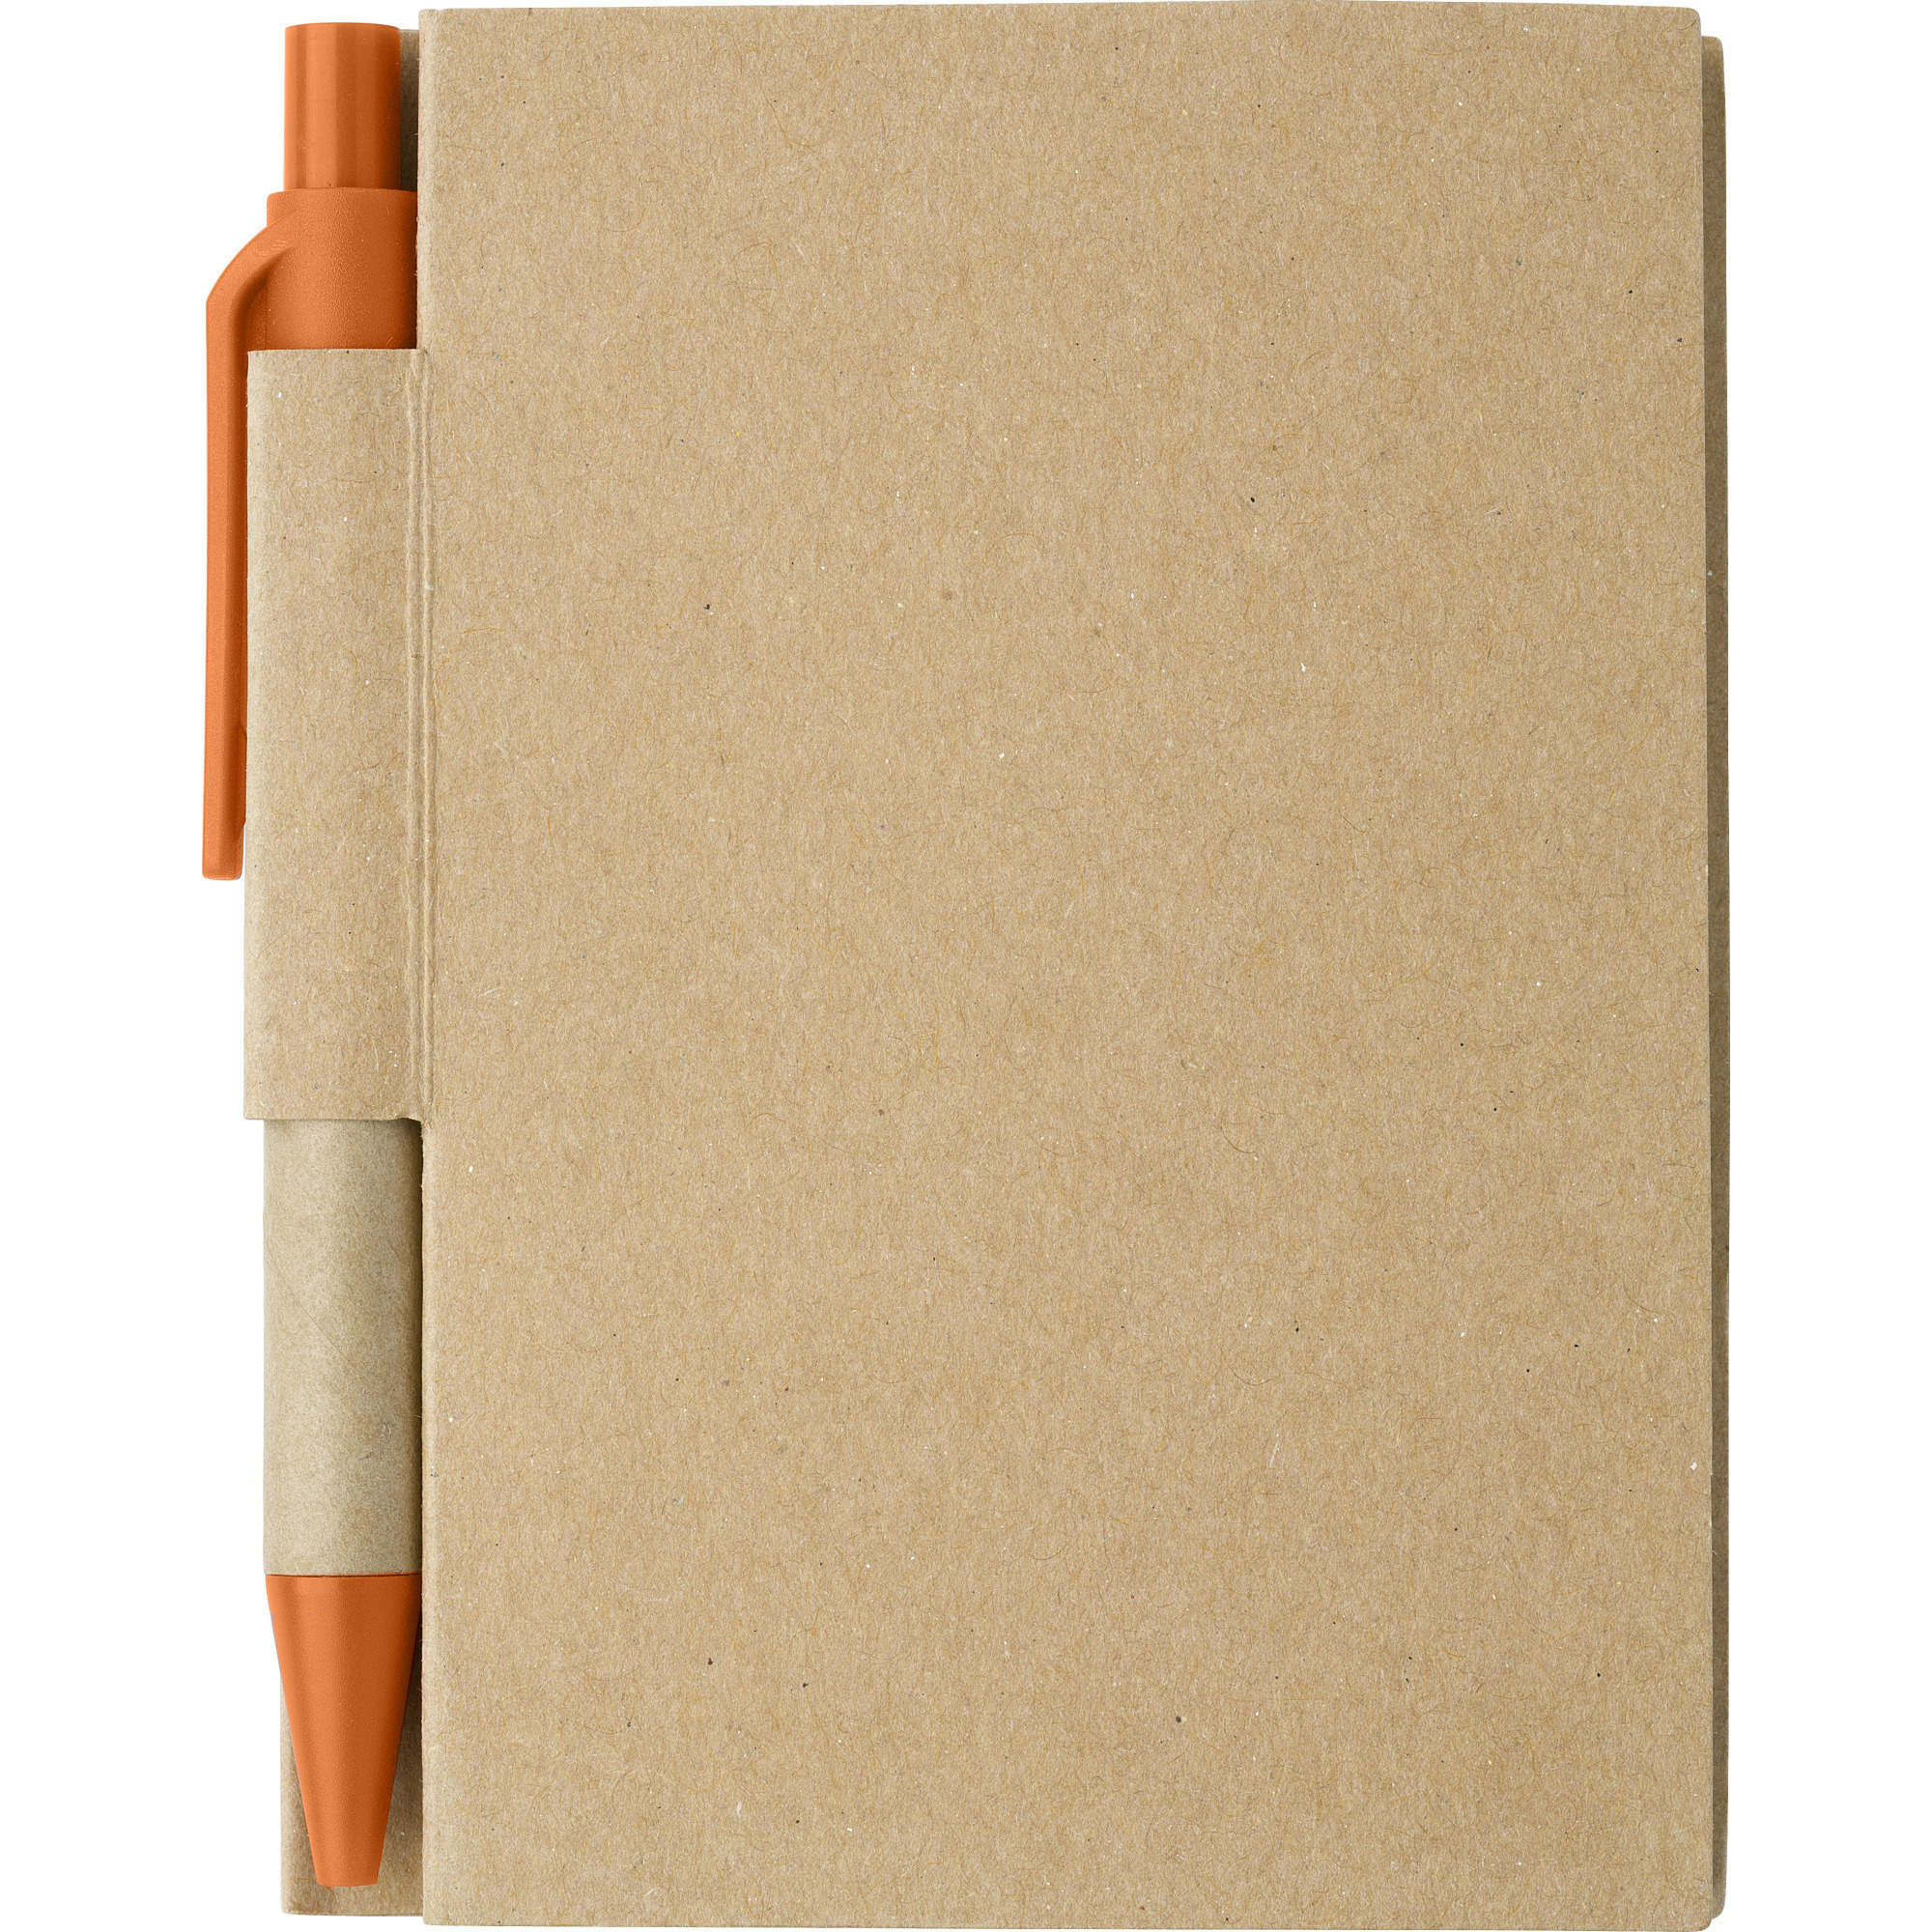 Notitie-opschrijf boekje met balpen harde kaft beige-oranje 11x8cm 80blz gelinieerd